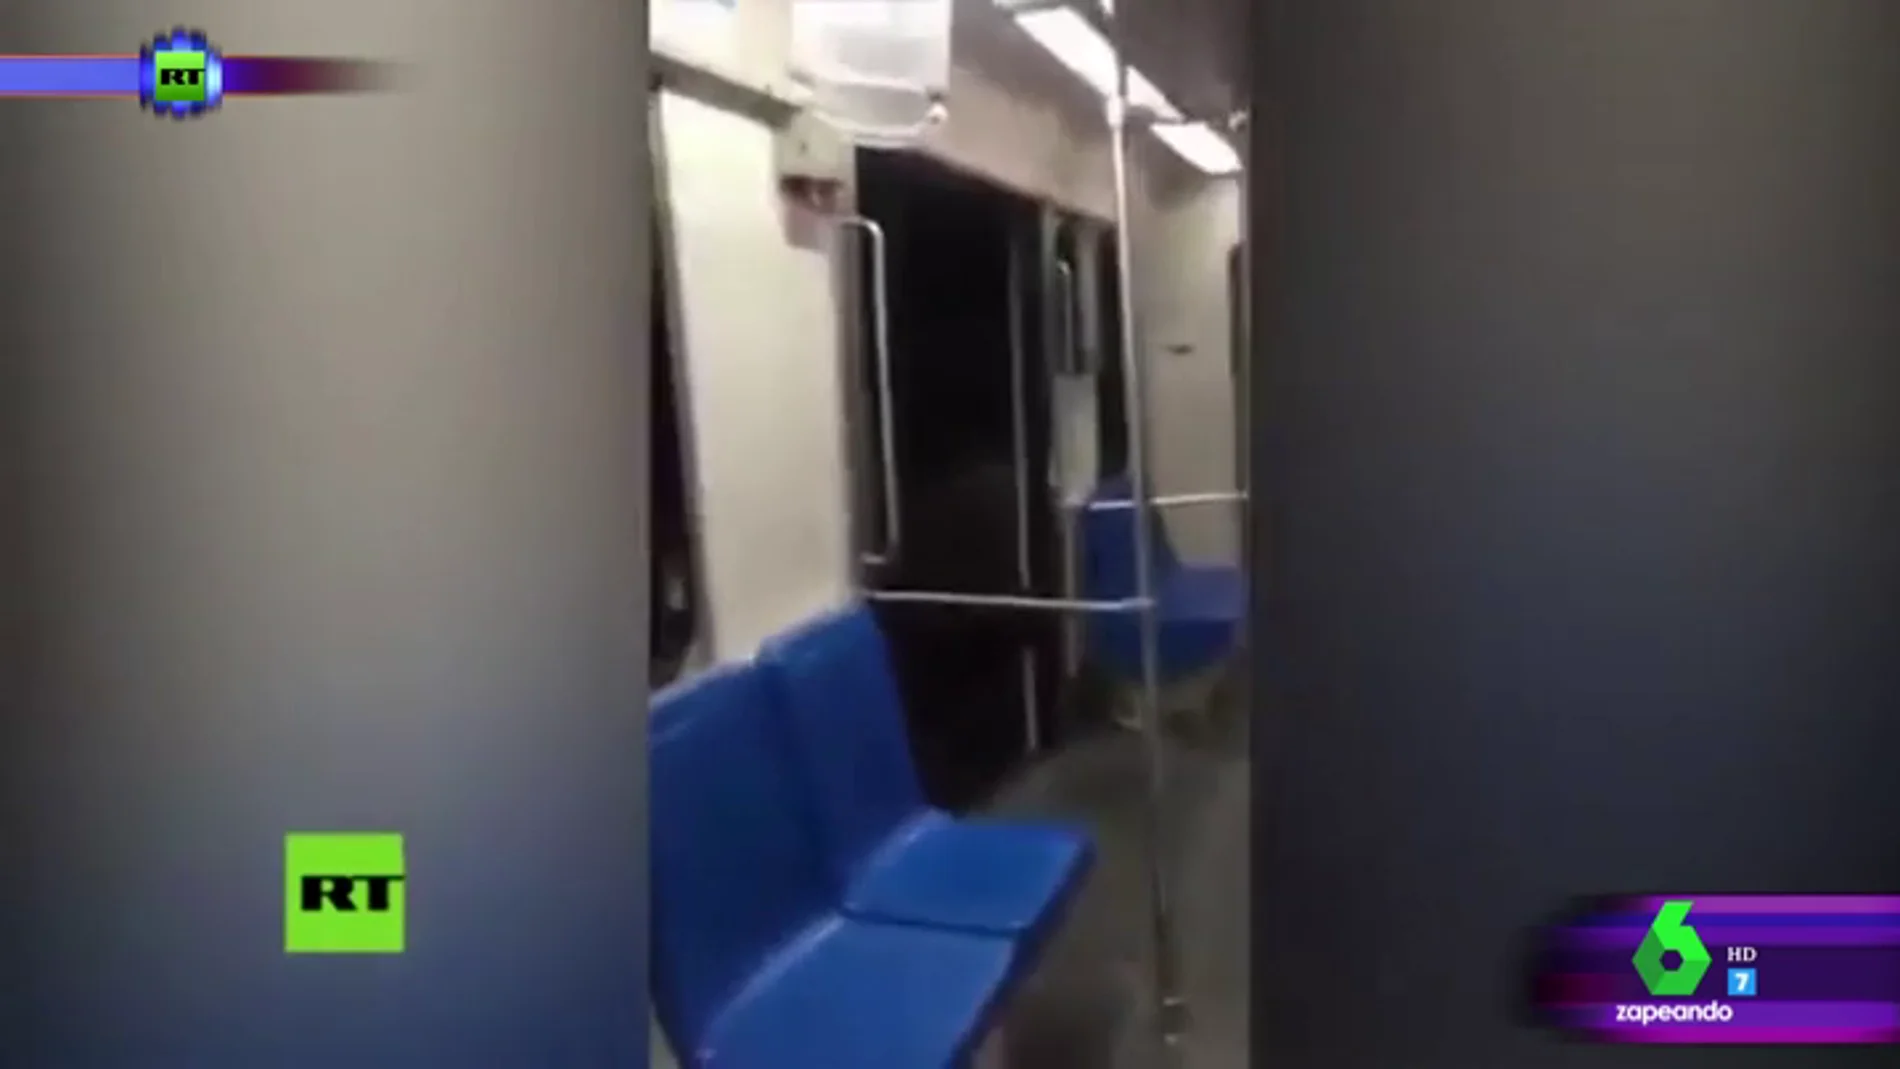 El susto de un joven mexicano cuando se queda dormido en el metro: "Parece una pinche película de terror esto"